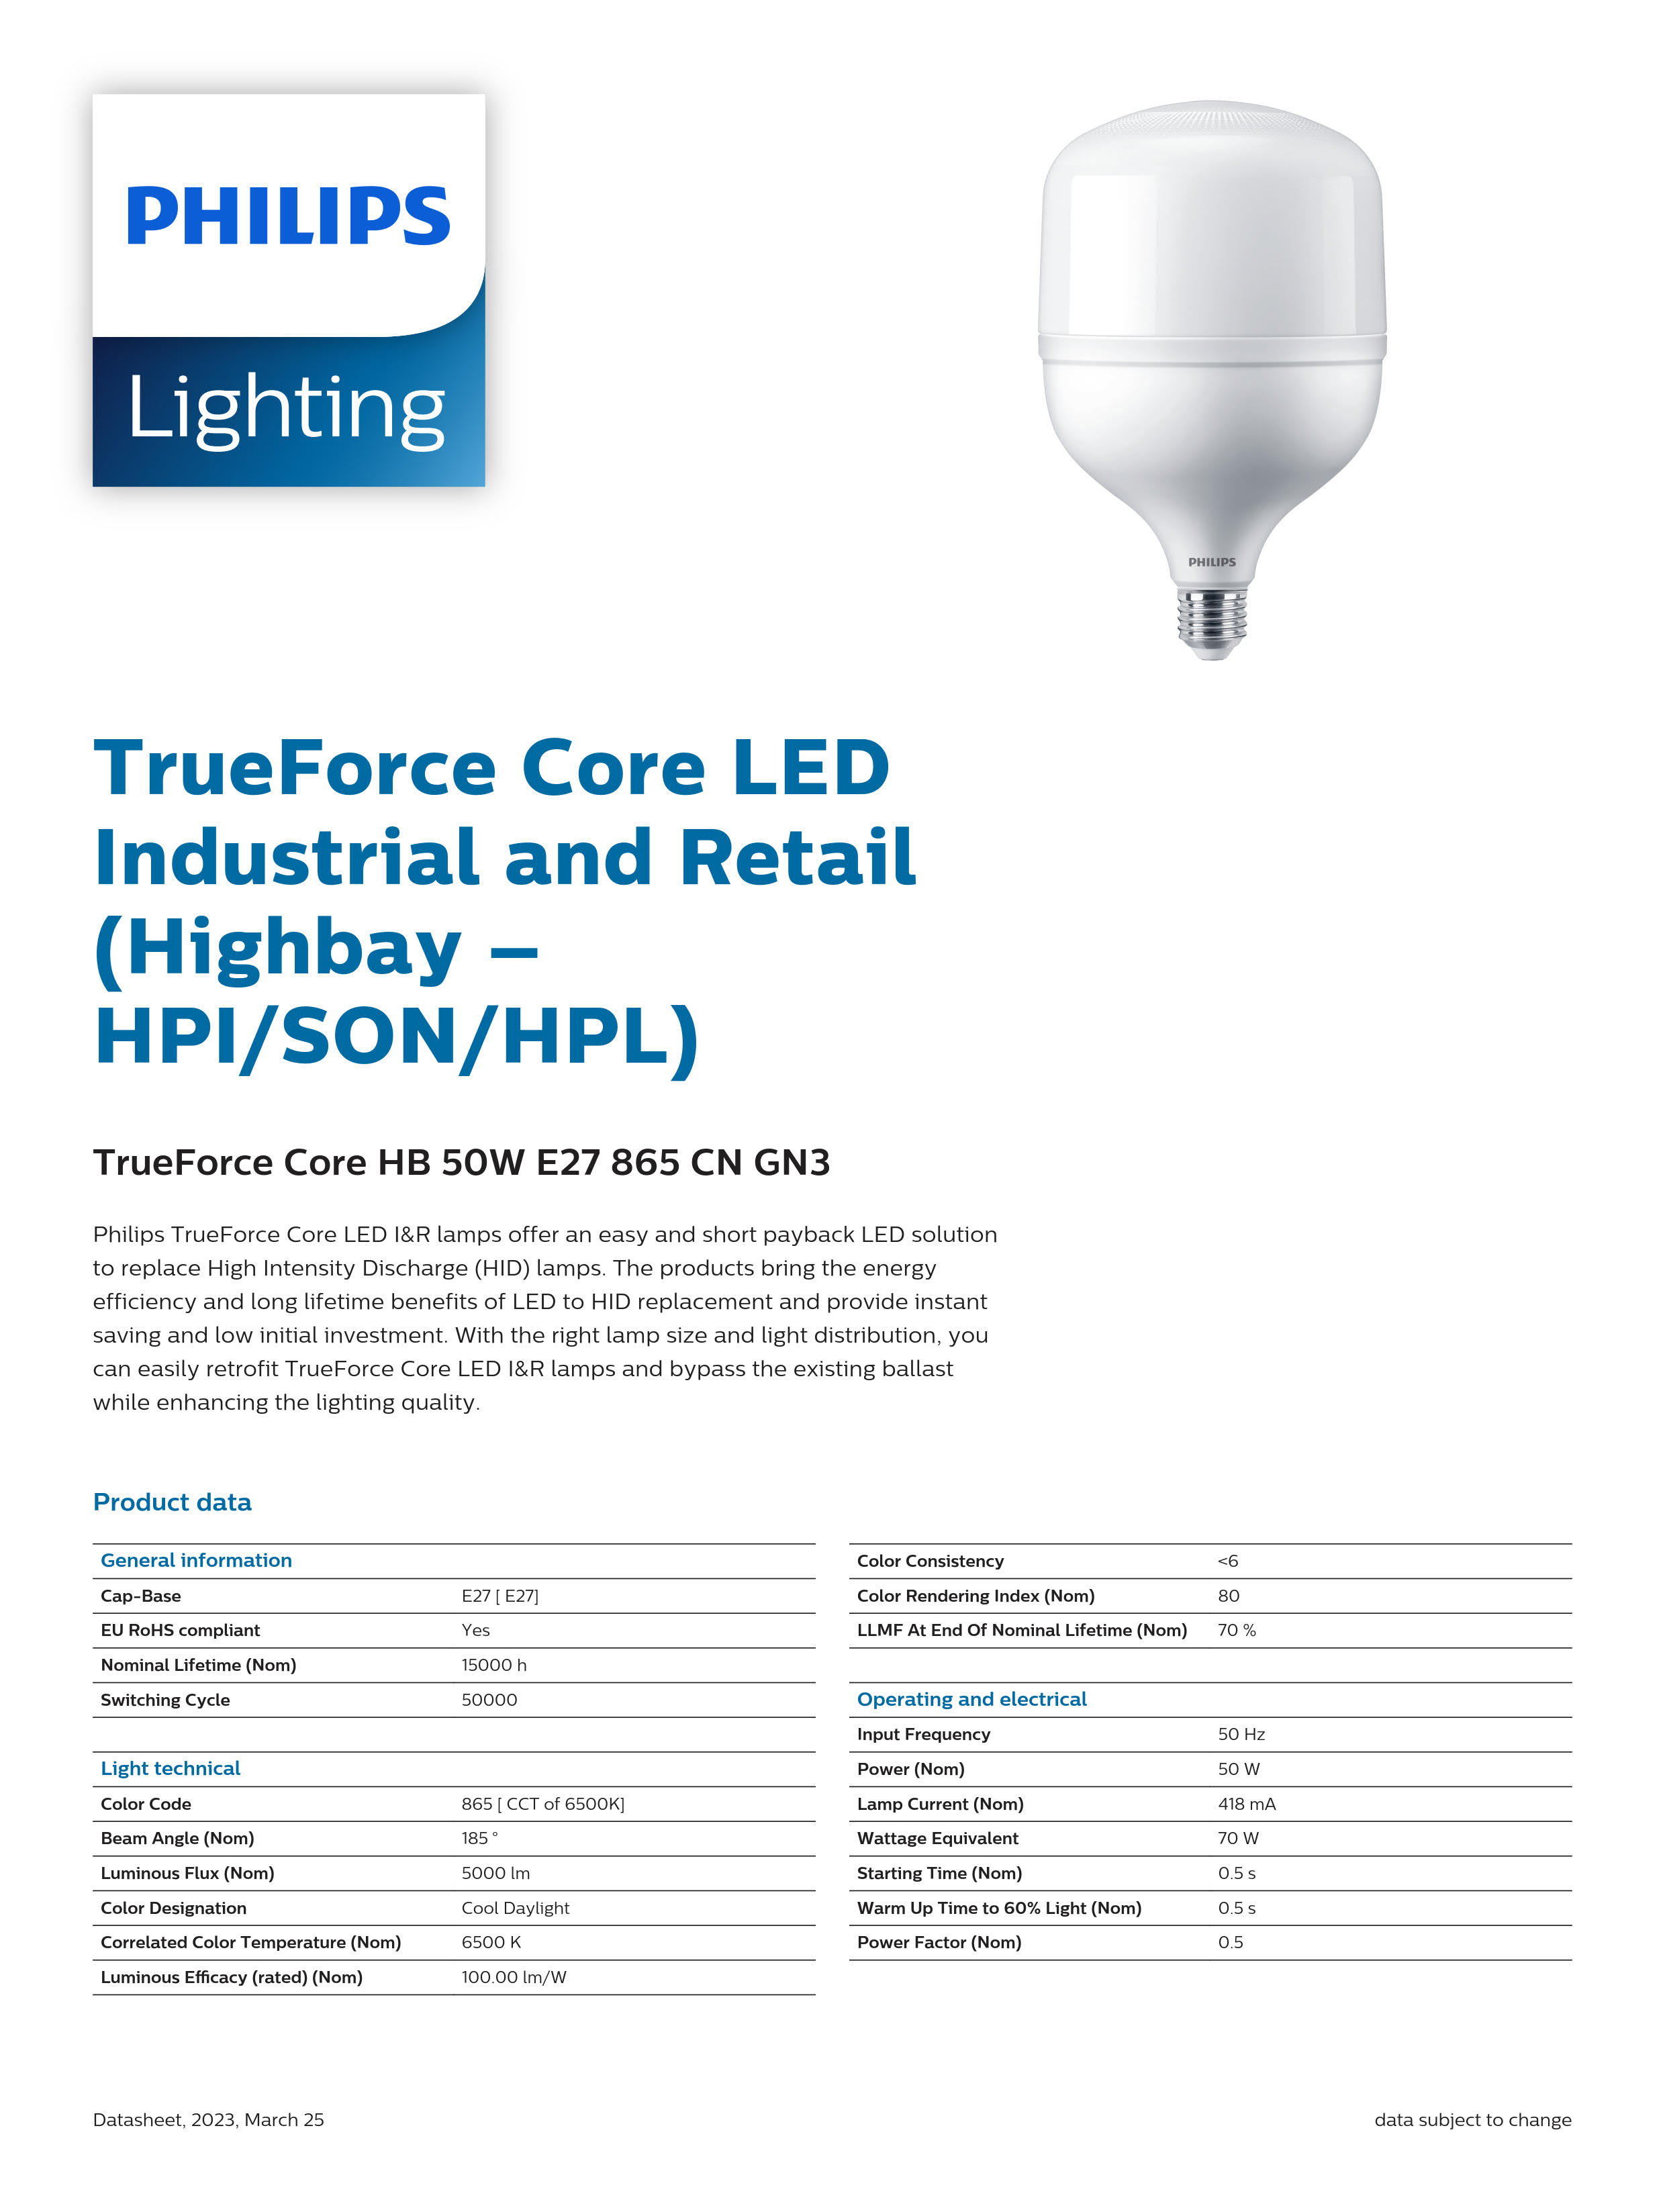 PHILIPS LED Bulb TrueForce Core HB 50W E40 865 CN GN3 29002408910